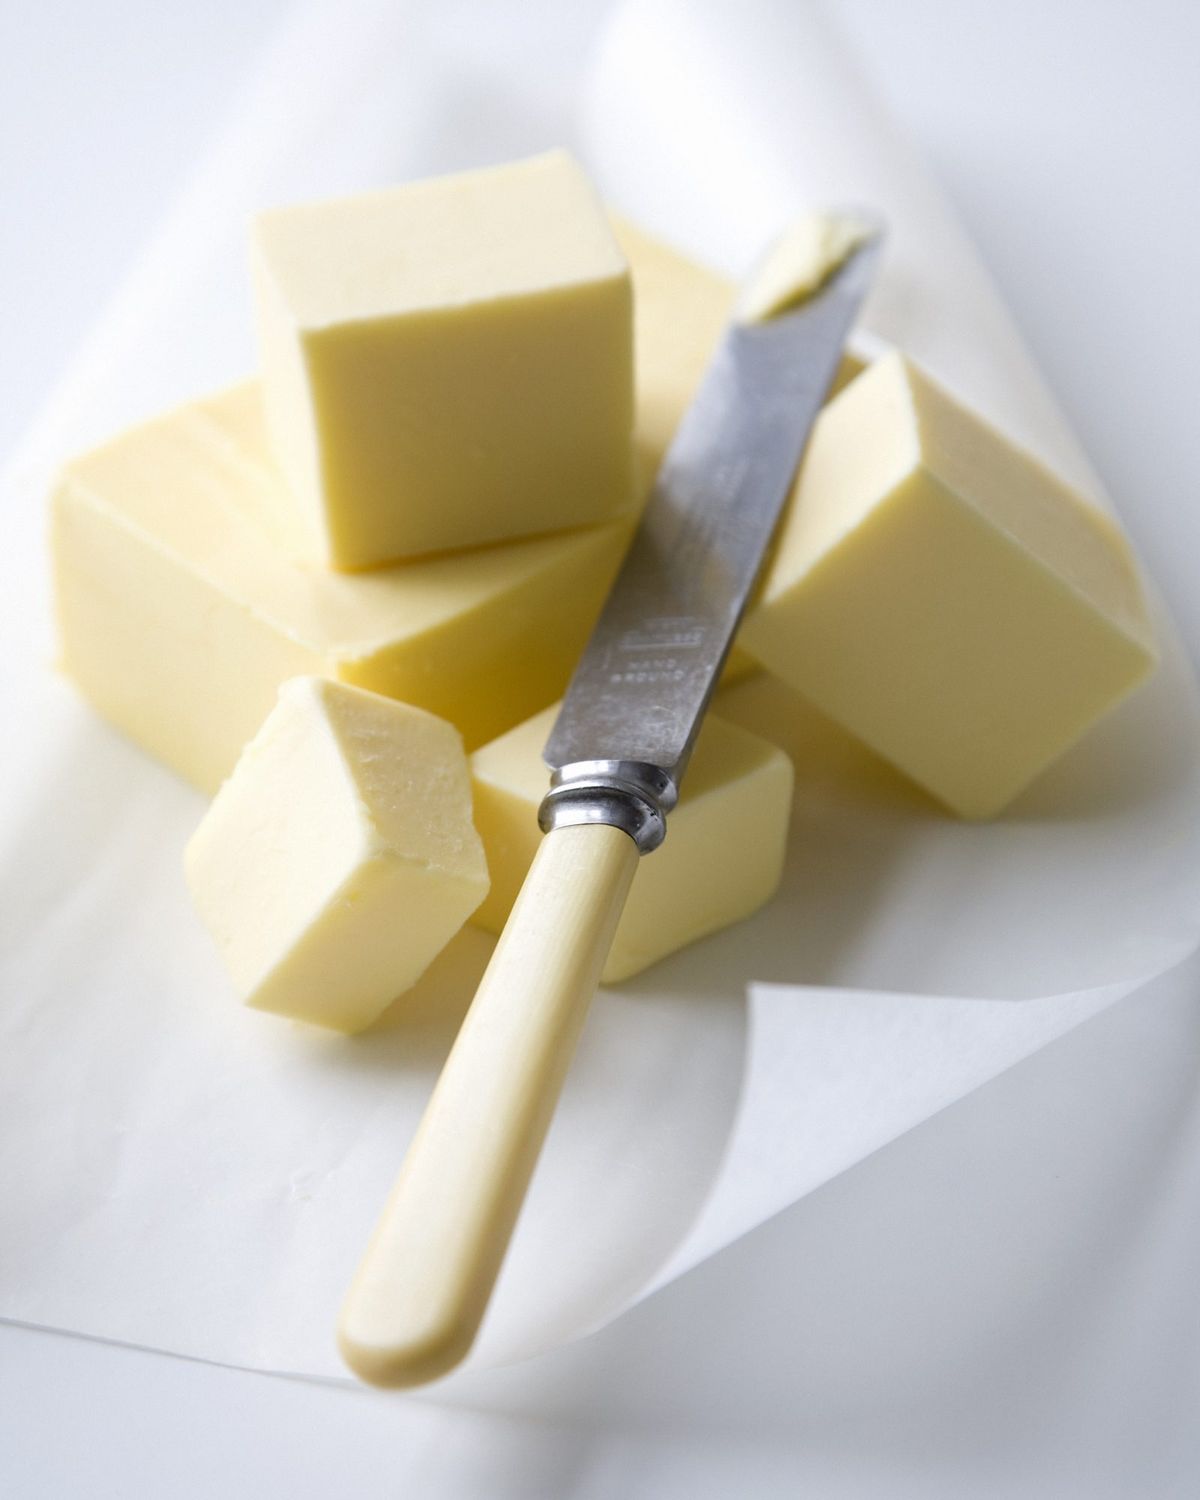 Bloki masla in maslenega noža na pergamentnem papirju